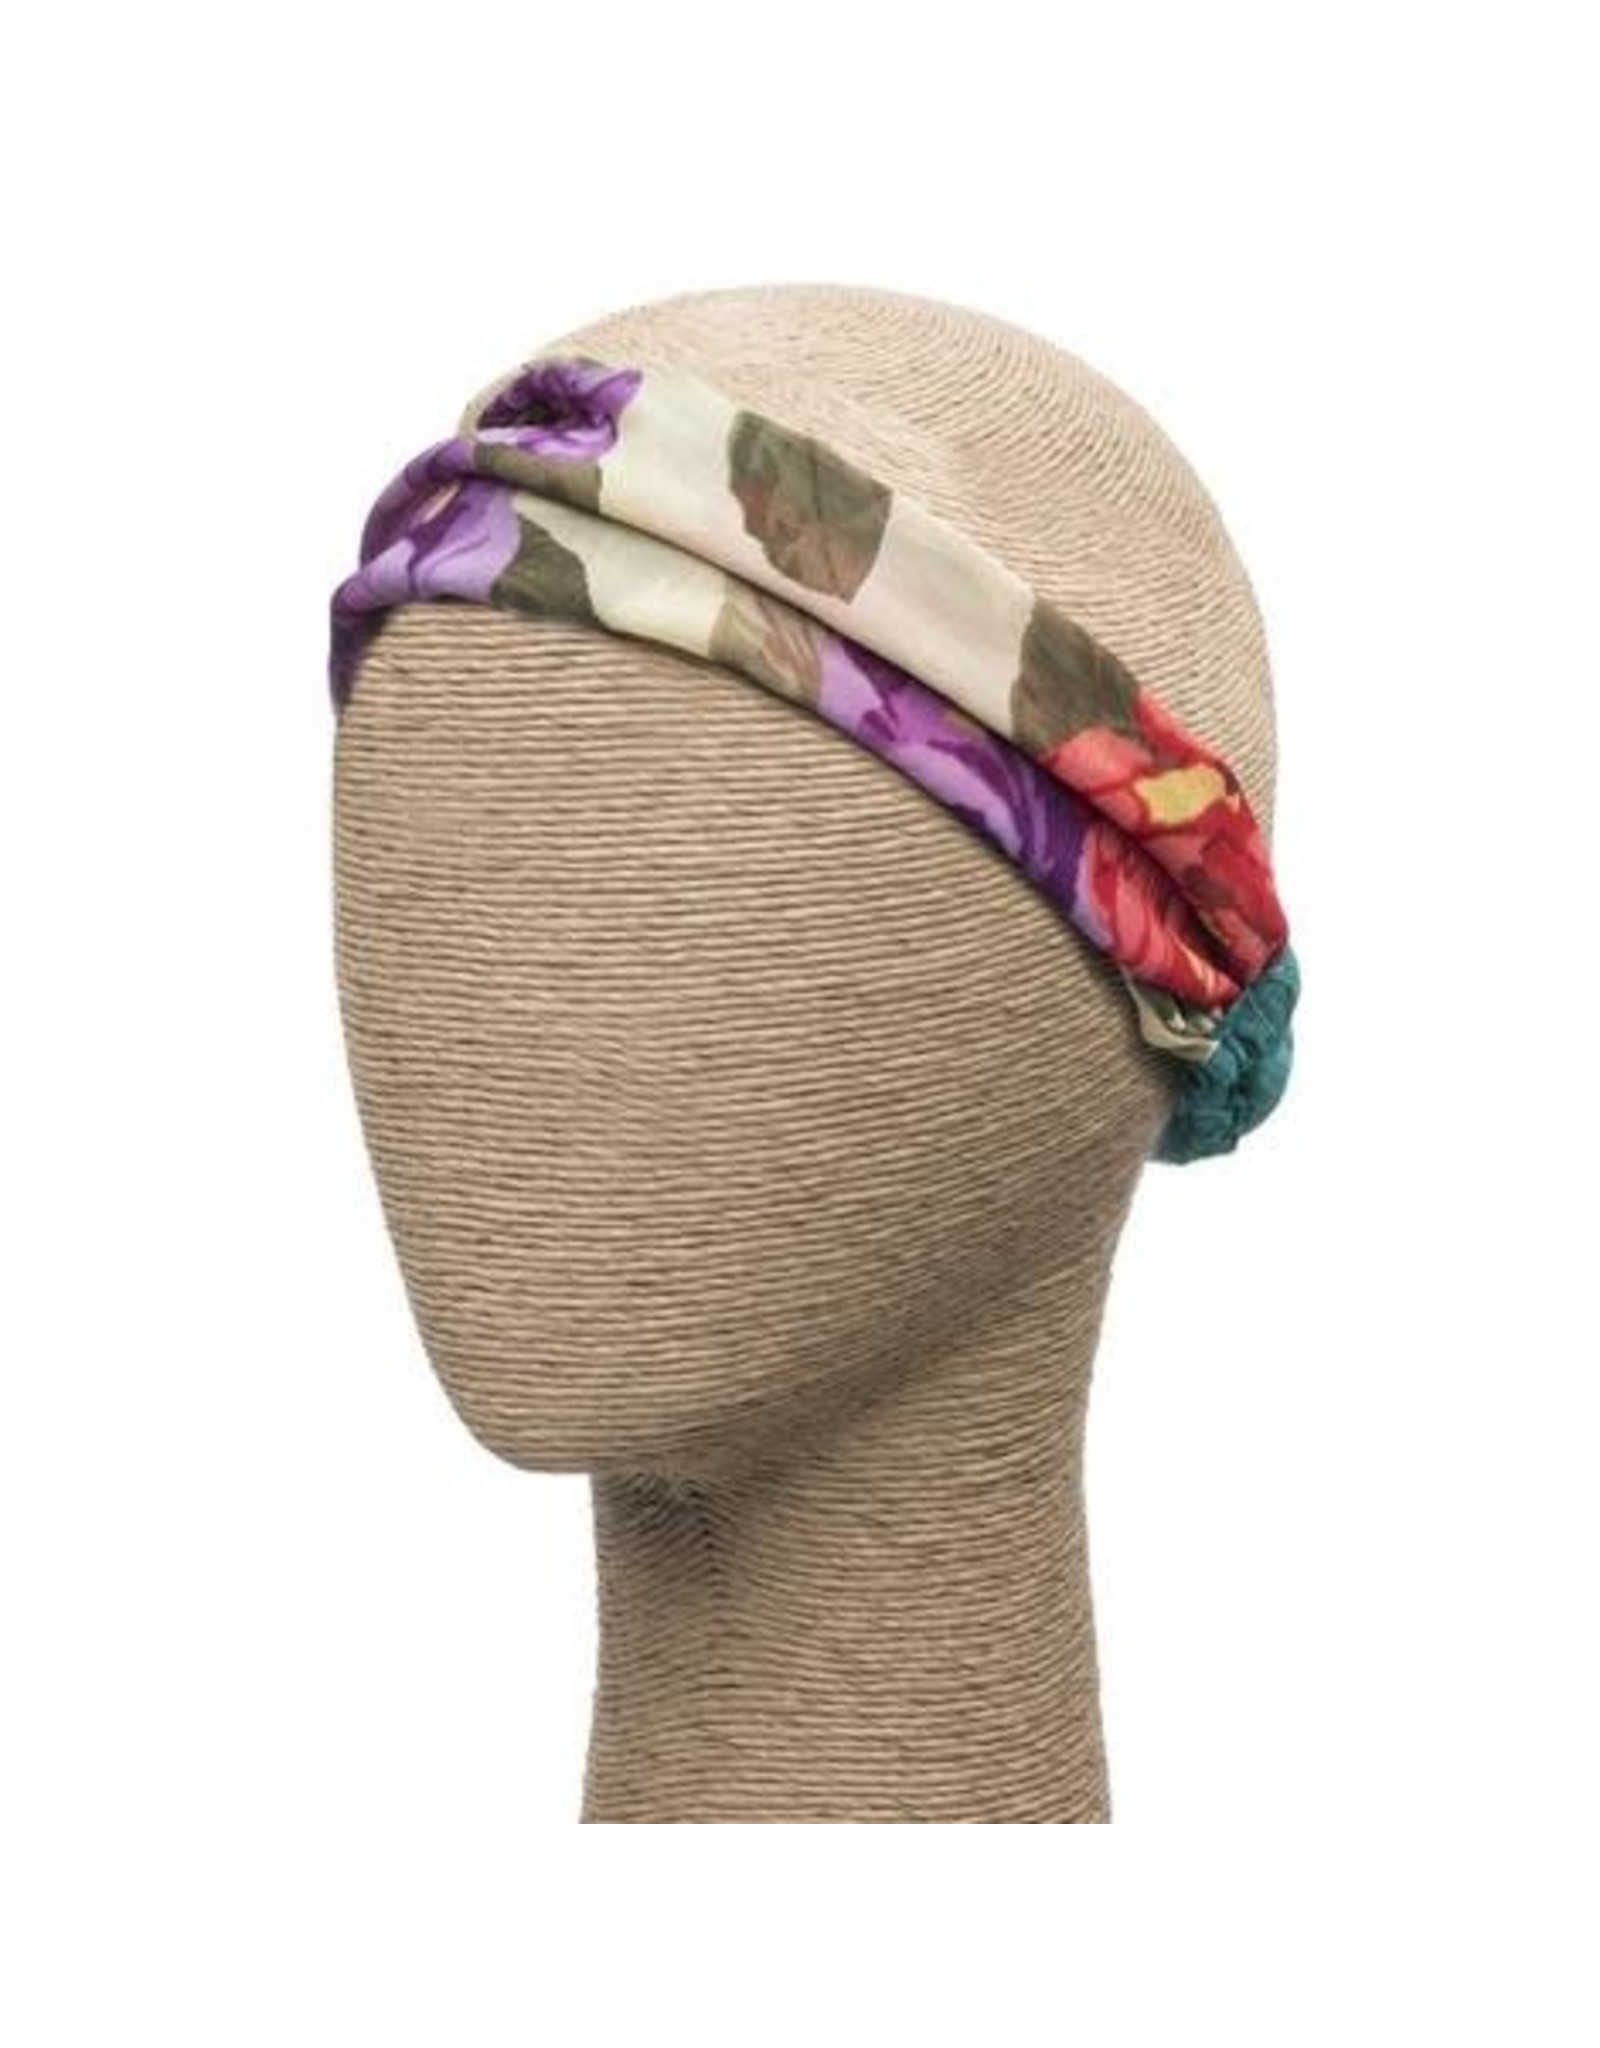 Trade roots Cabana Sari Headband, India (Colors Vary)